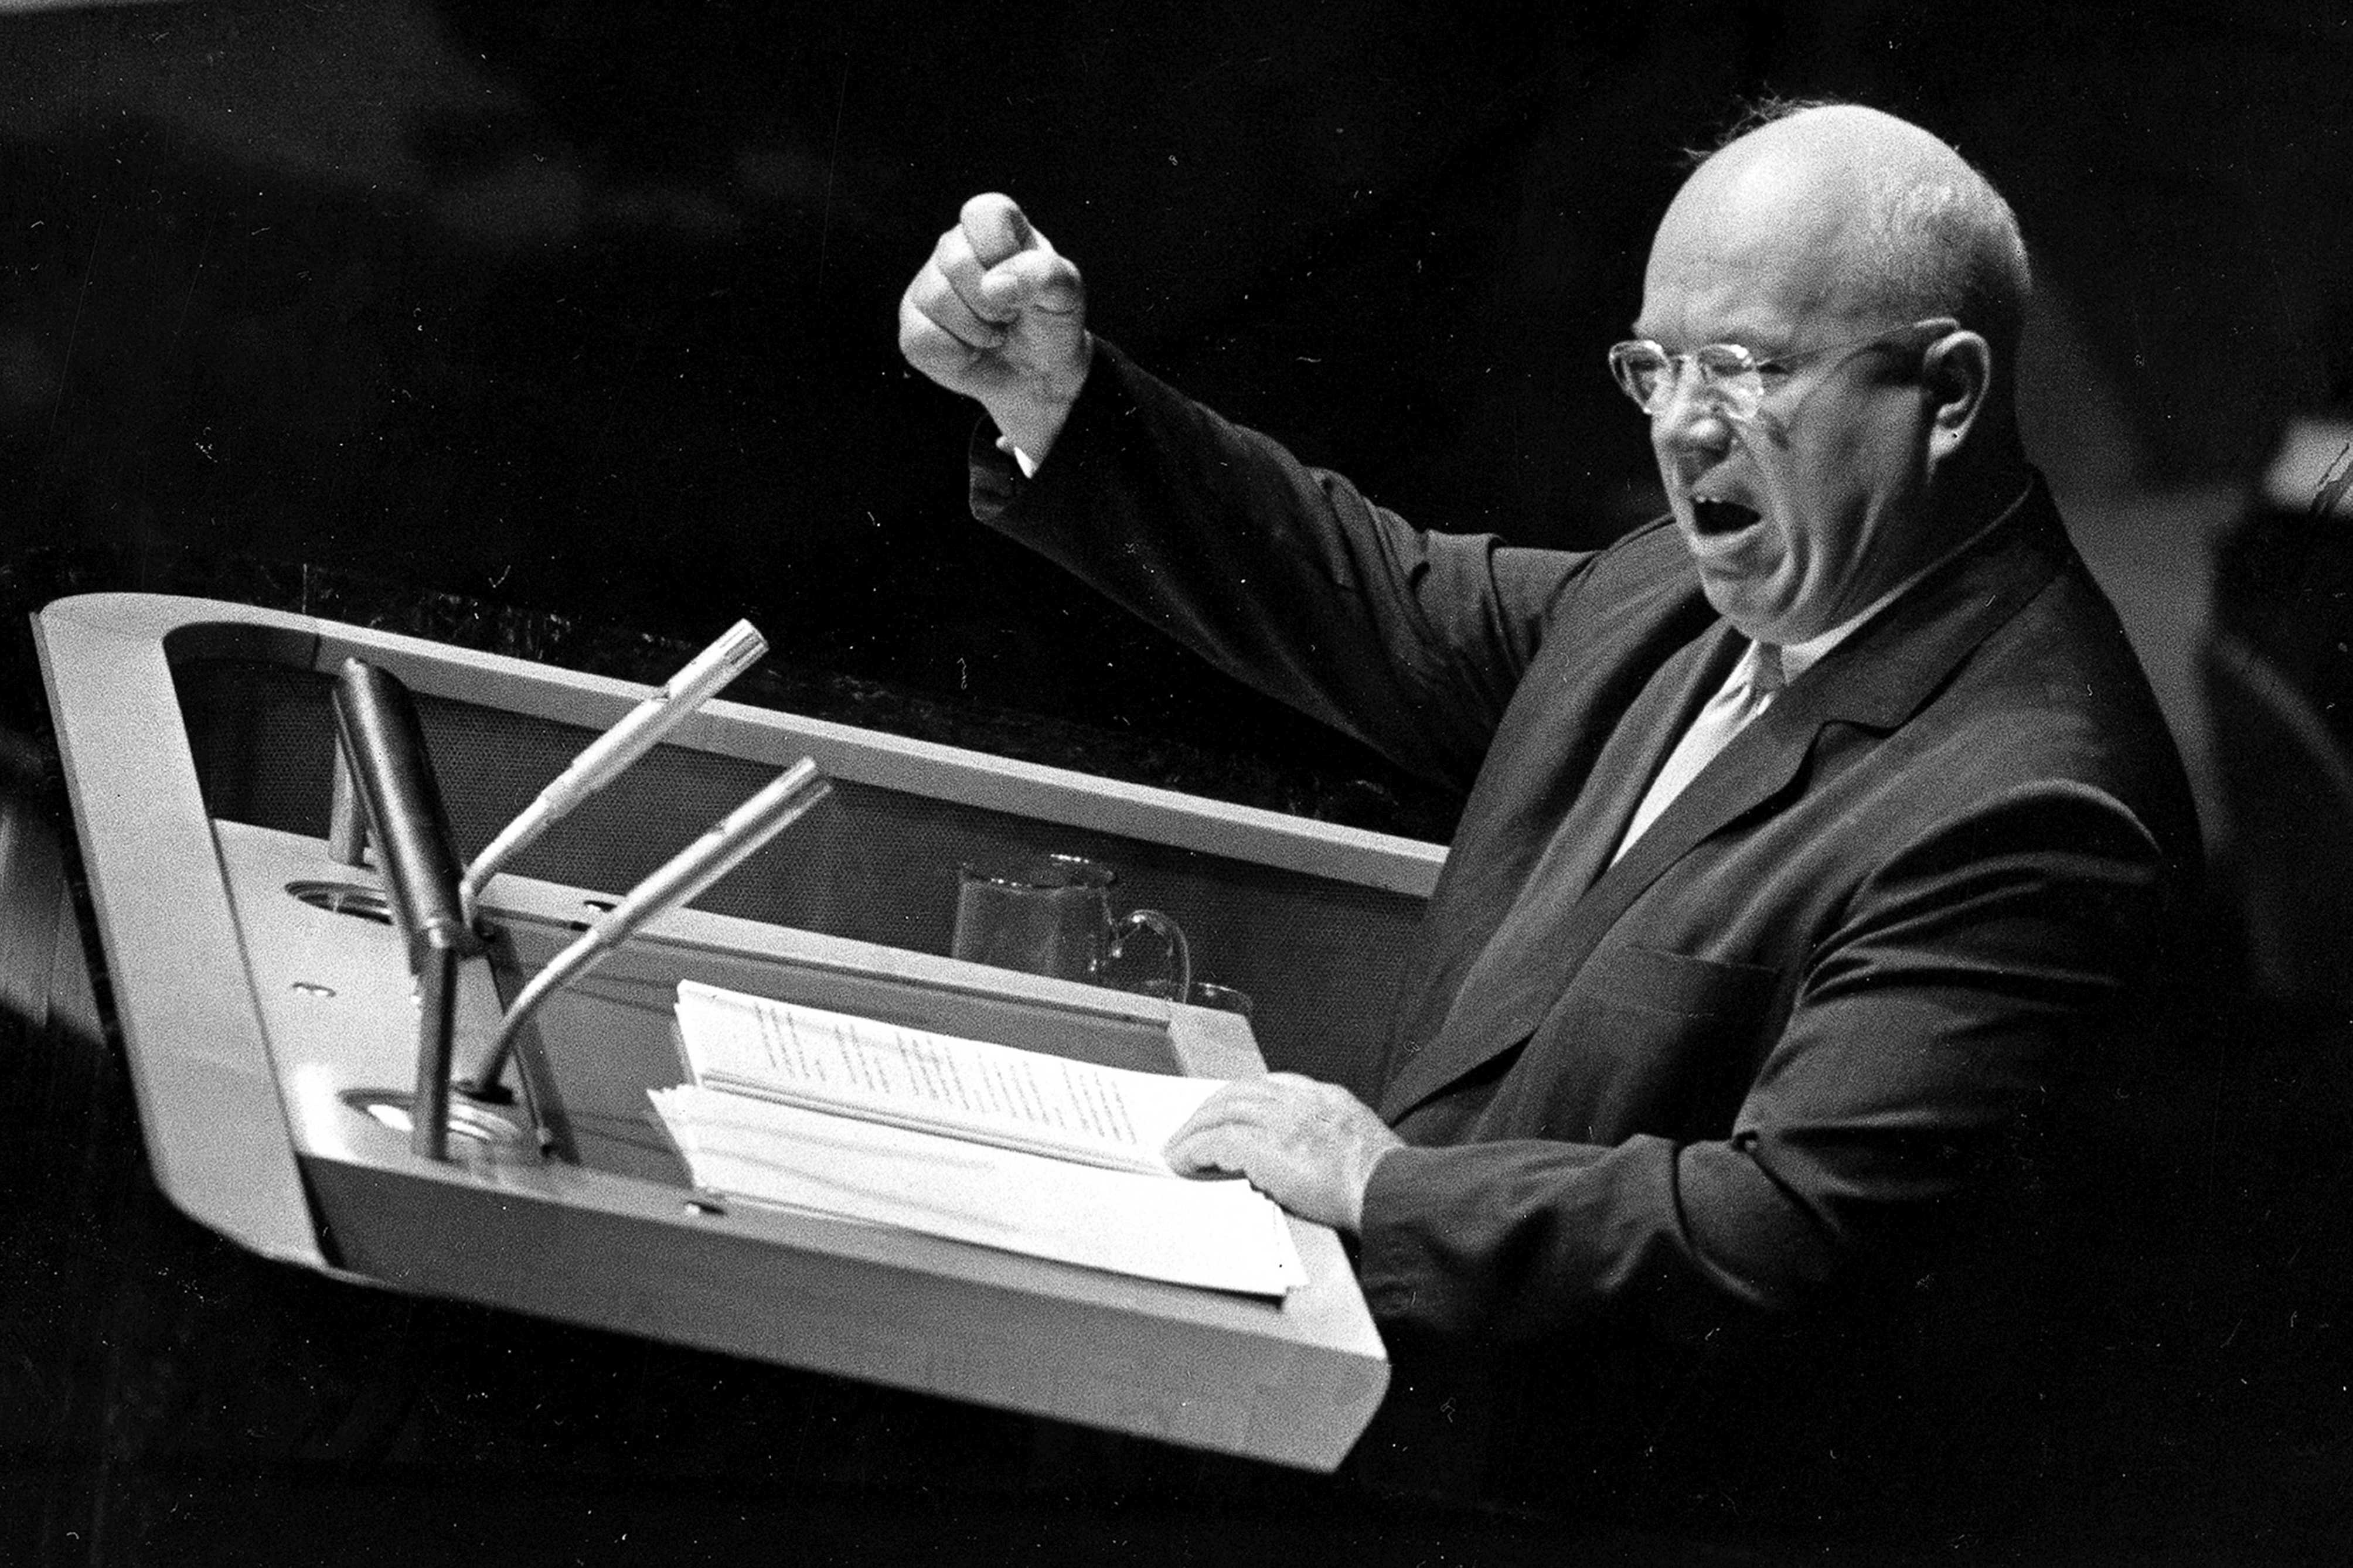 ARCHIVO - Nikita Khrushchev, primer ministro soviético y primer secretario del Partido Comunista de la Unión Soviética, hace un gesto con el puño para enfatizar un comentario durante su discurso ante la Asamblea General de las Naciones Unidas en la ciudad de Nueva York el 23 de septiembre de 1960. 

